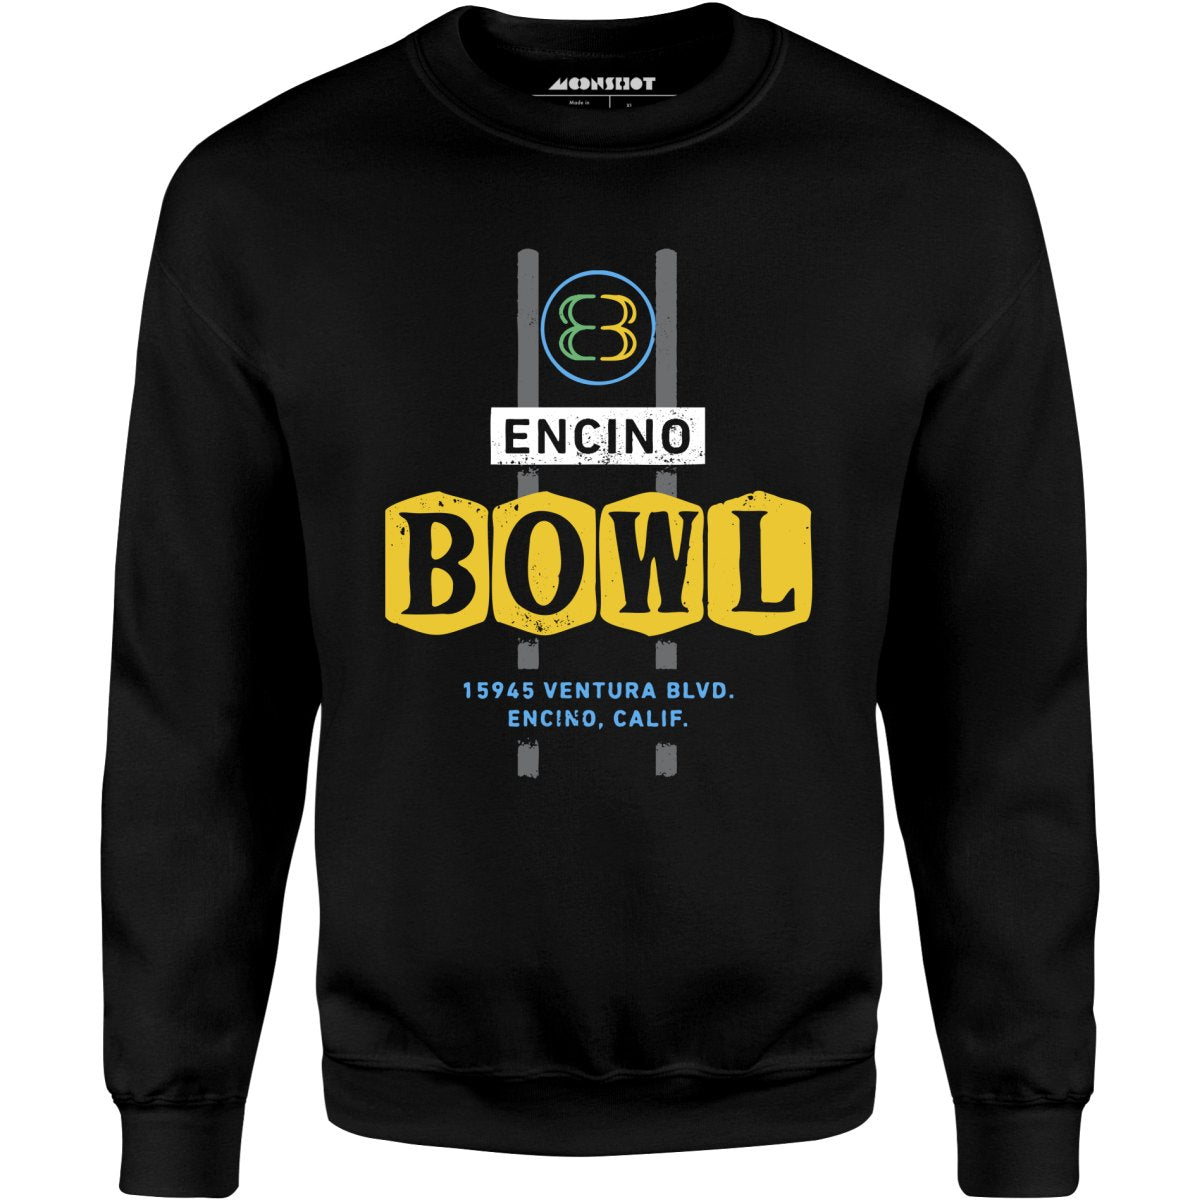 Encino Bowl - Encino, CA - Vintage Bowling Alley - Unisex Sweatshirt